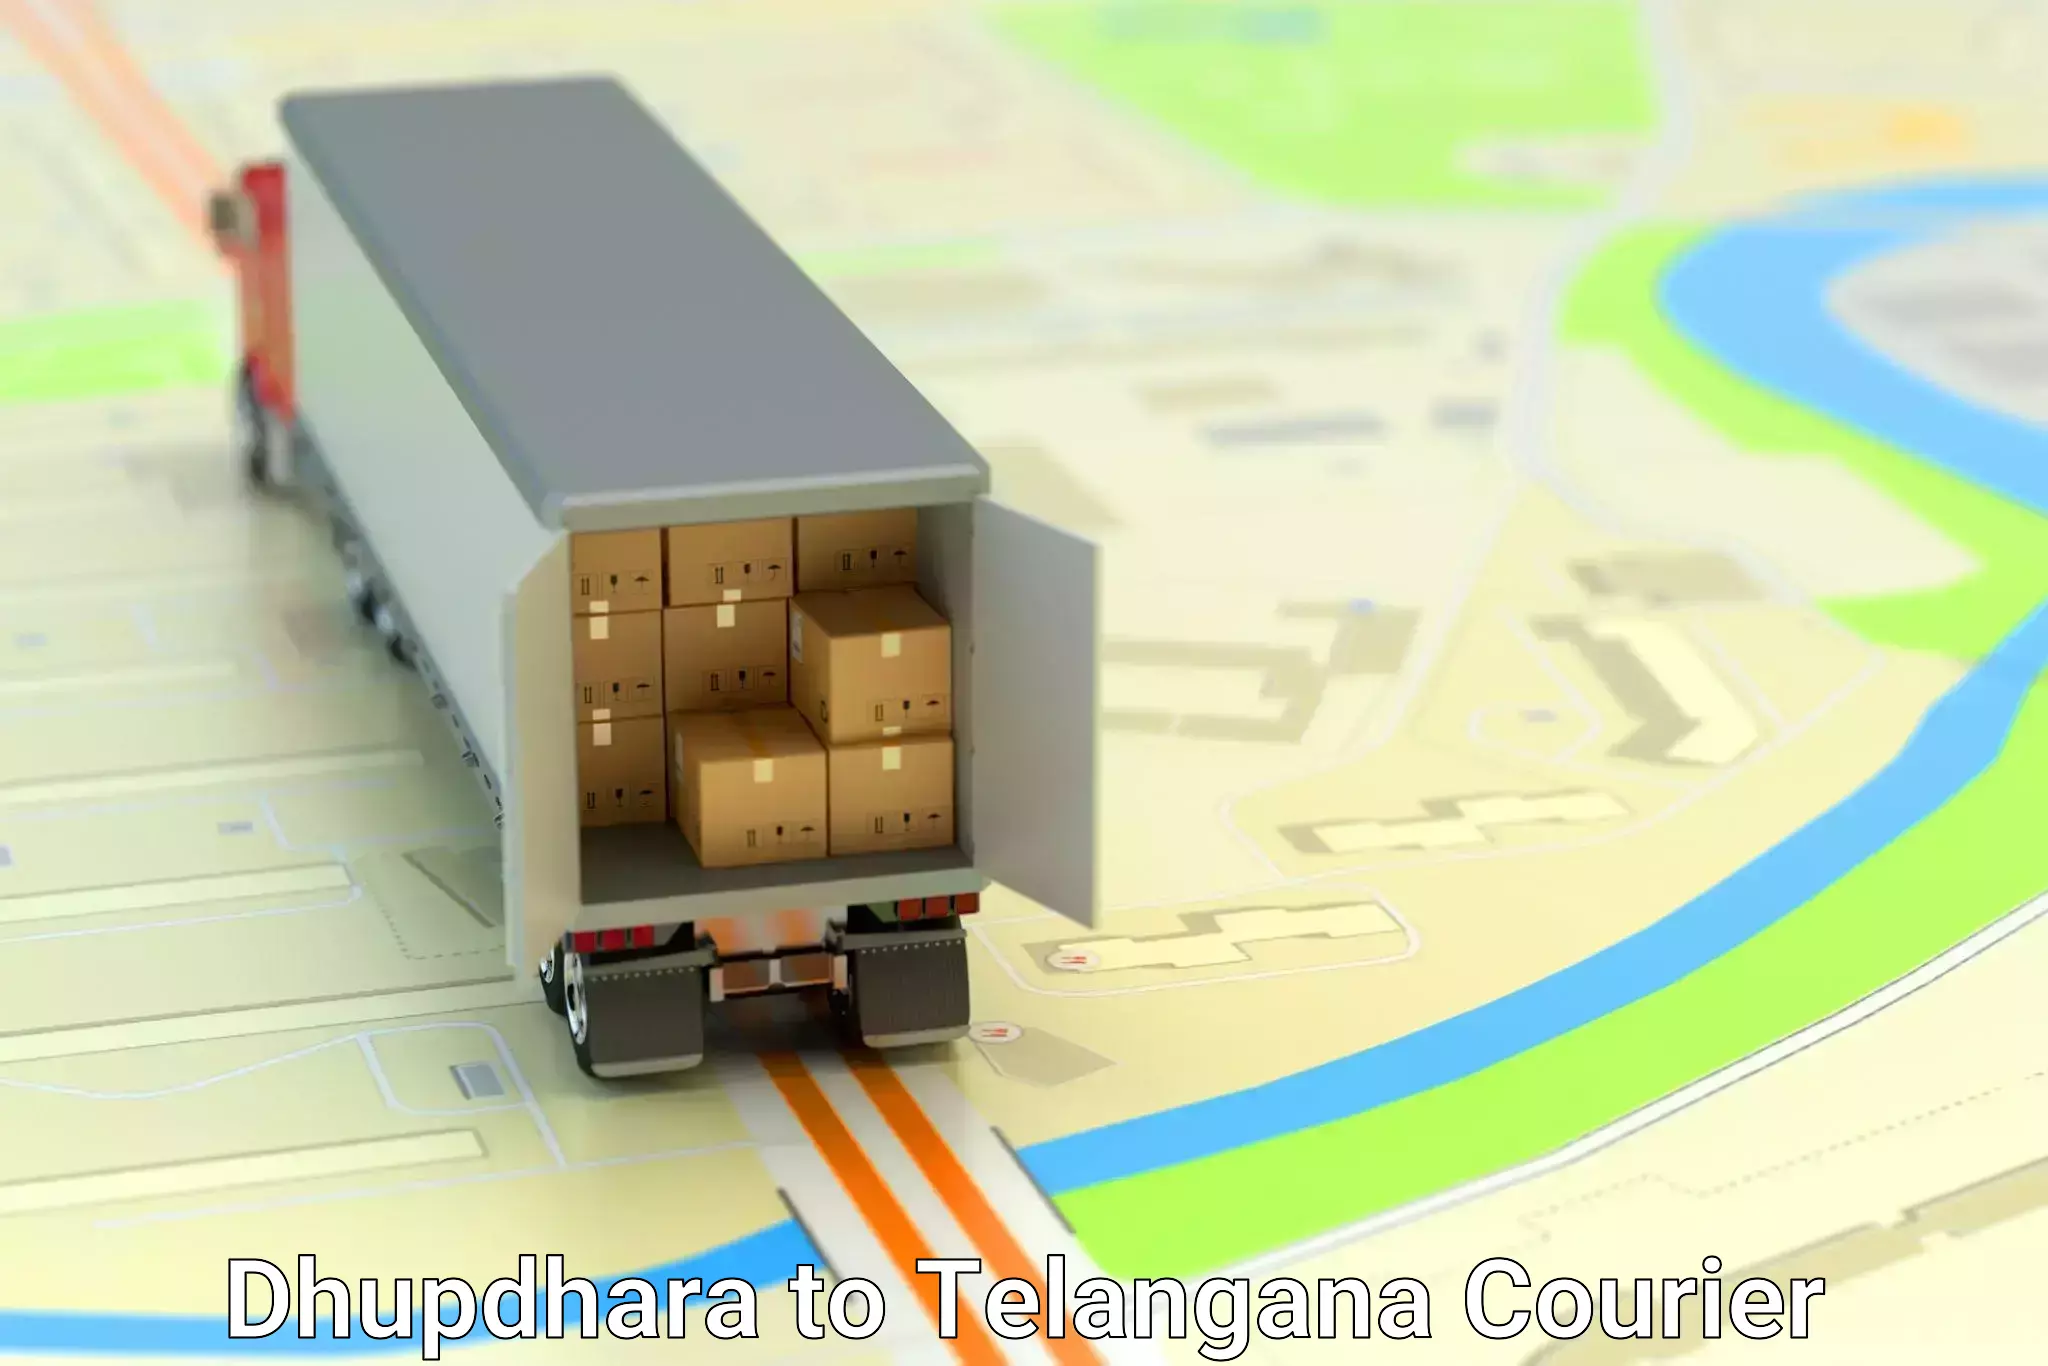 Efficient cargo handling Dhupdhara to Tadoor